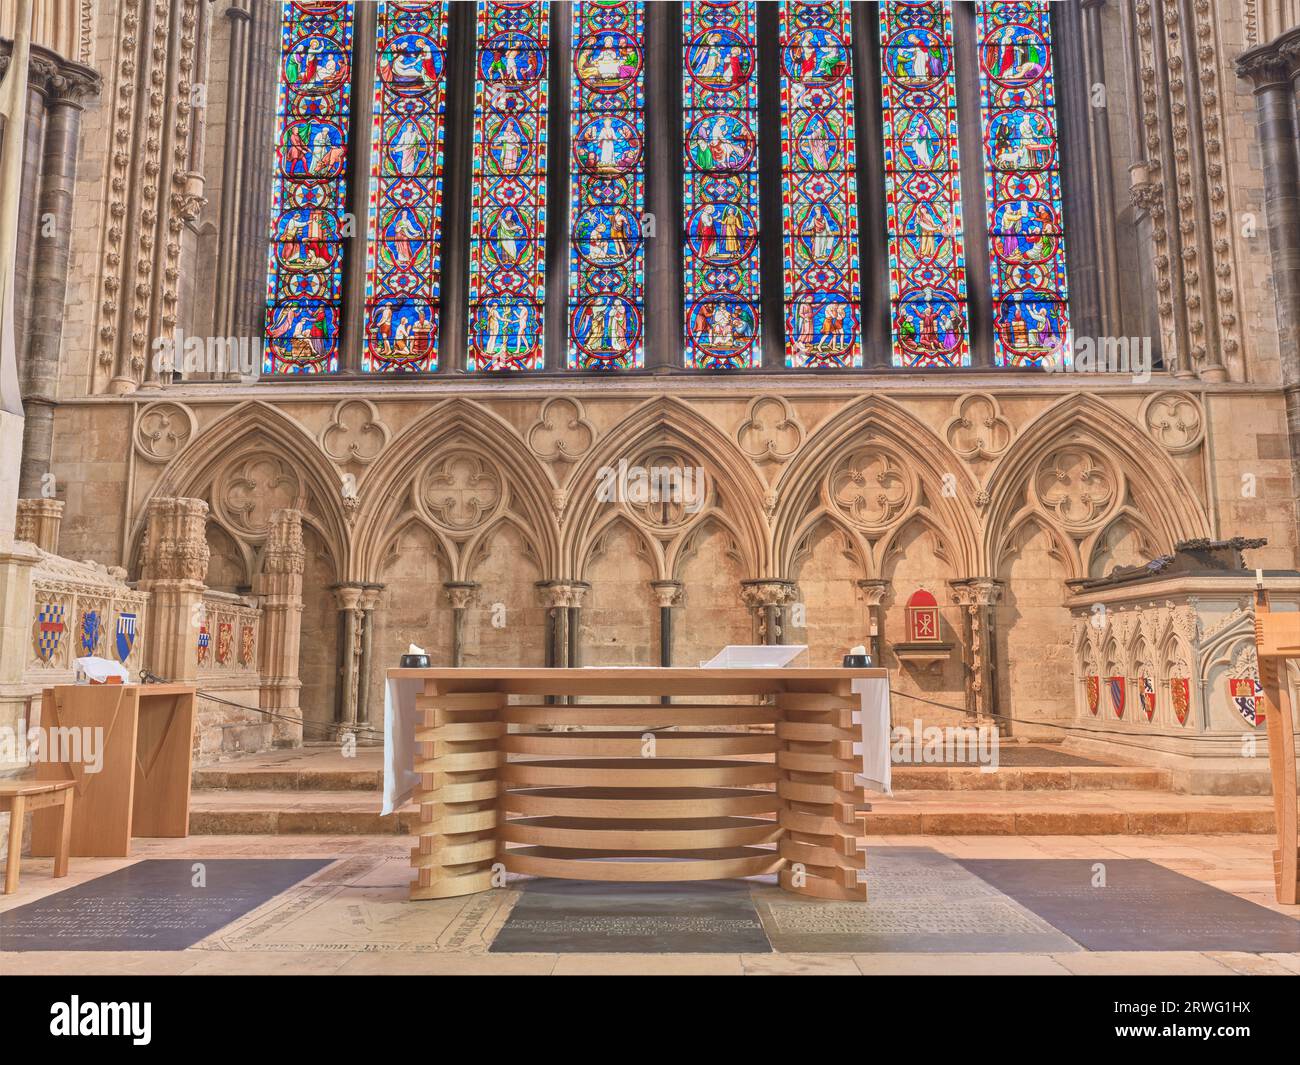 Altare e vetrate colorate all'estremità orientale della cattedrale medievale costruita dai normanni a Lincoln, Inghilterra. Foto Stock